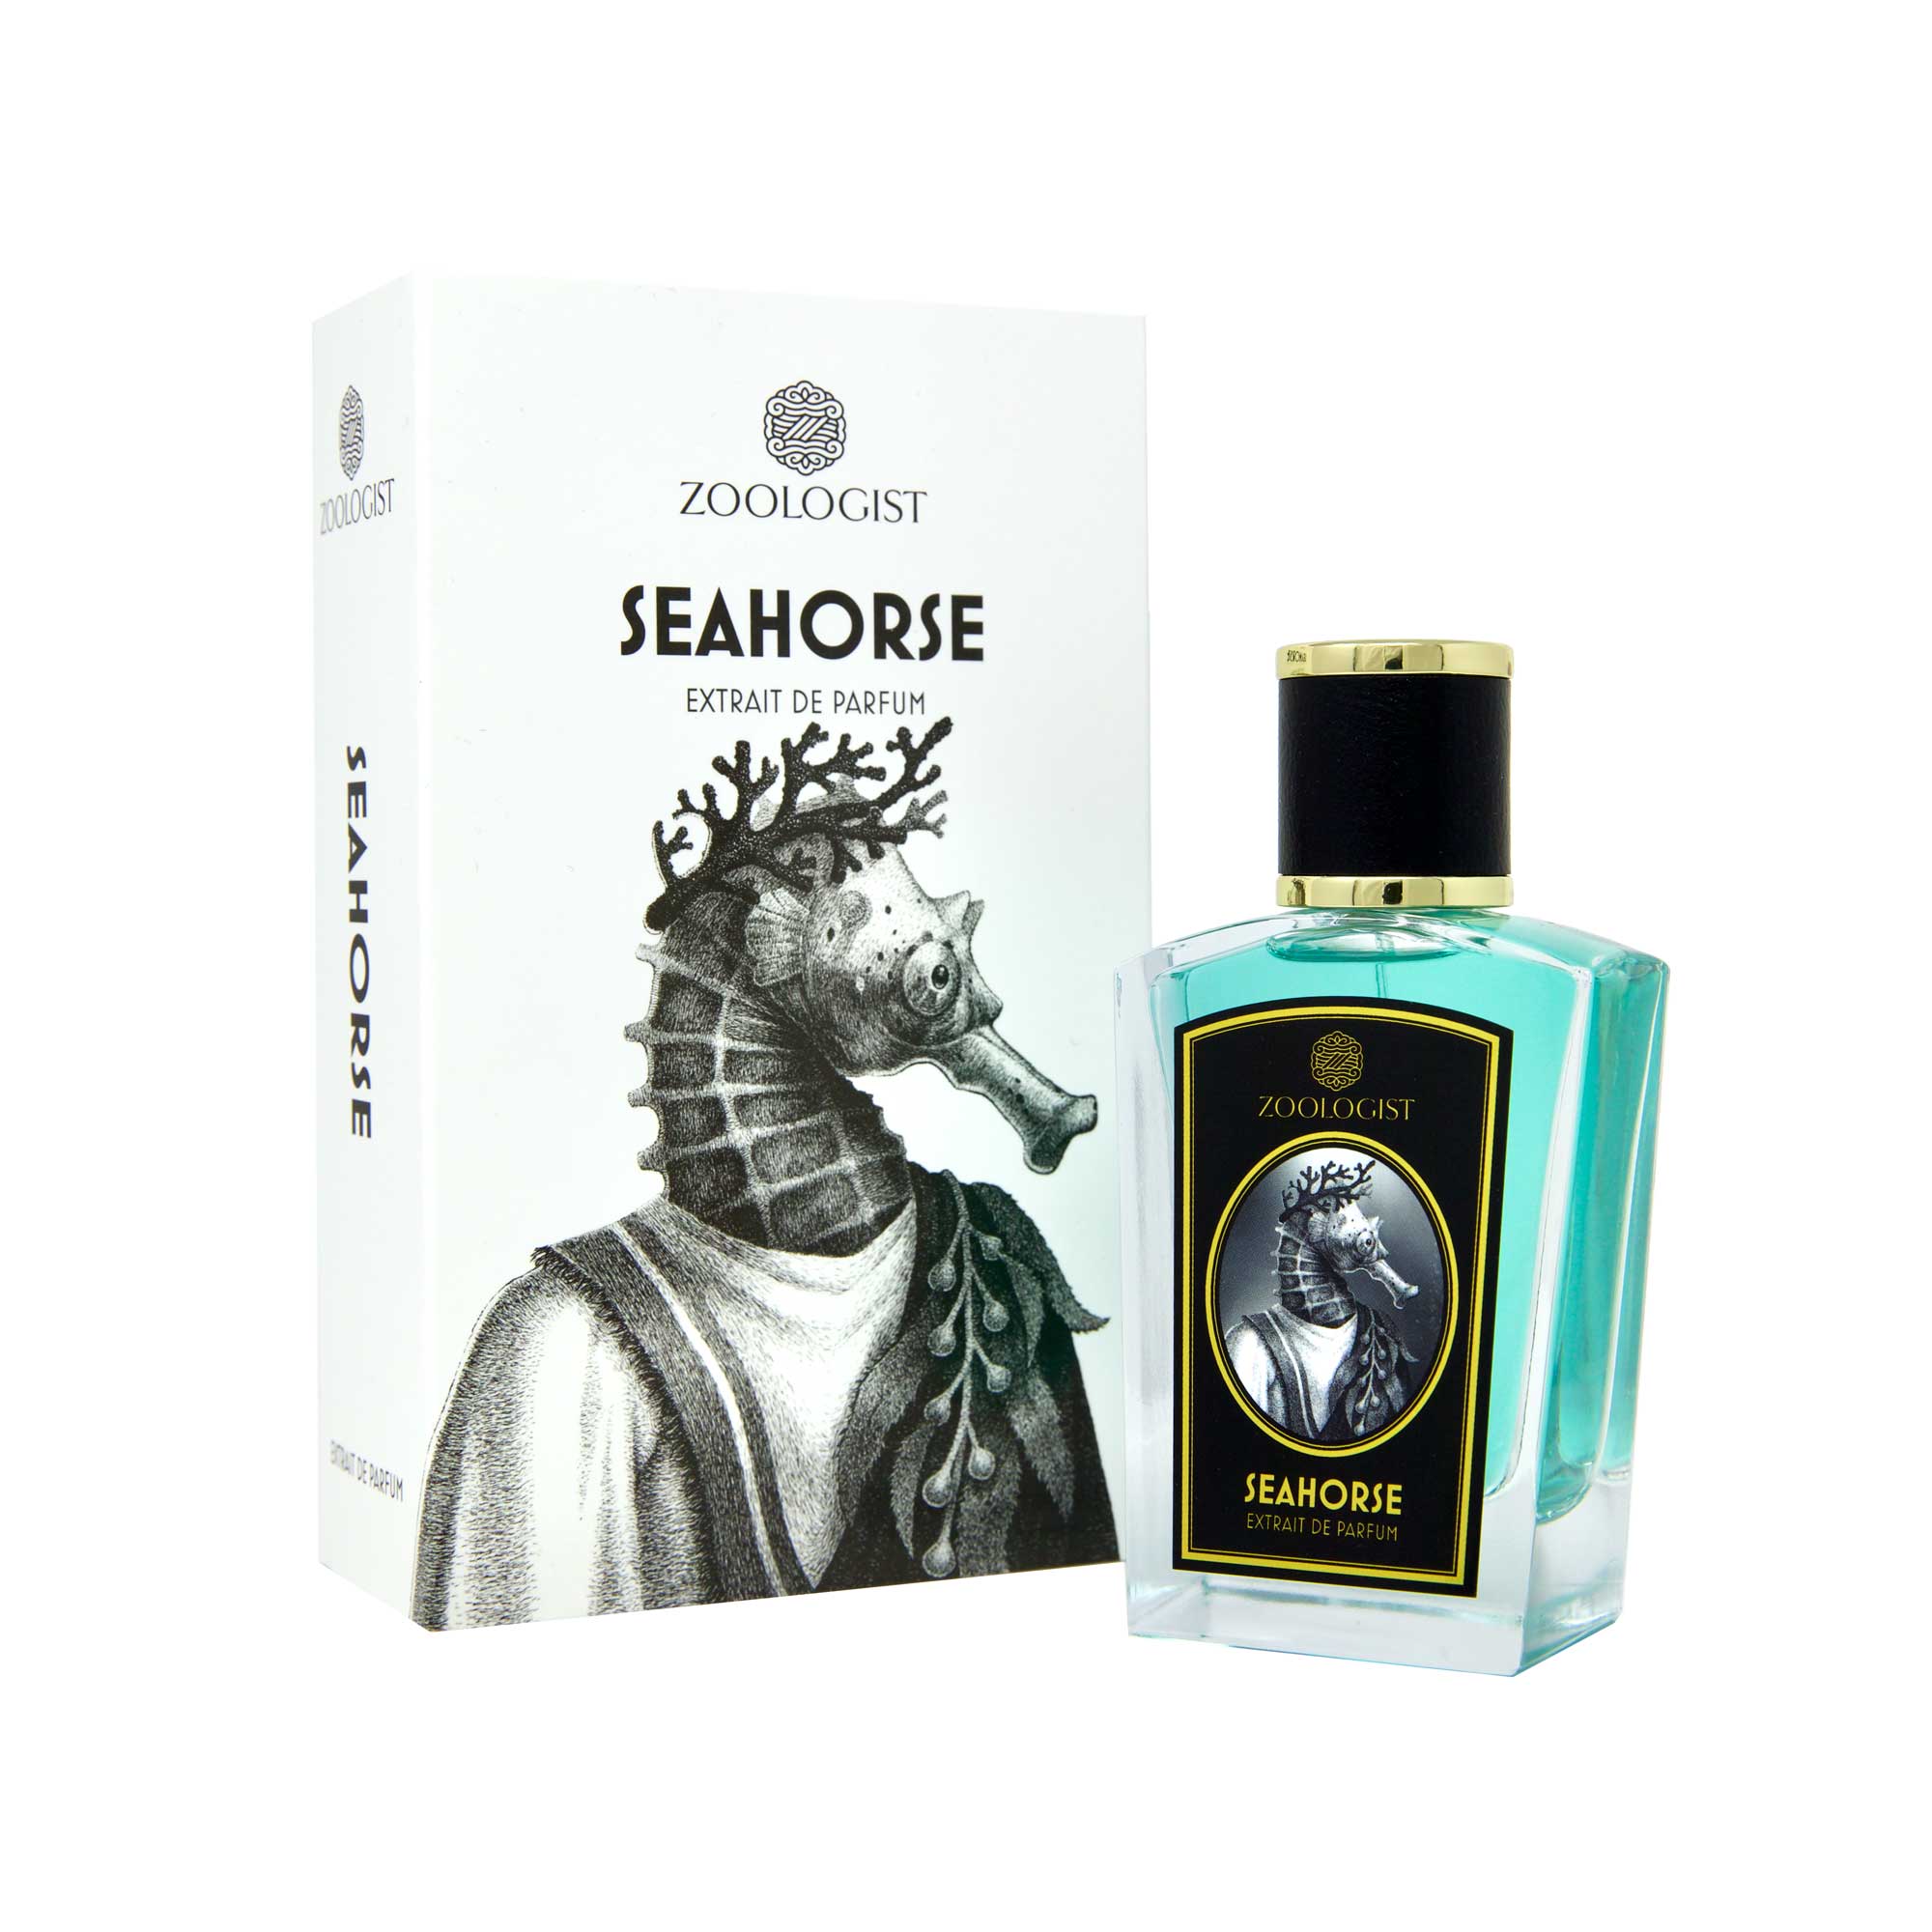 Zoologist Seahorse Extrait De Parfum